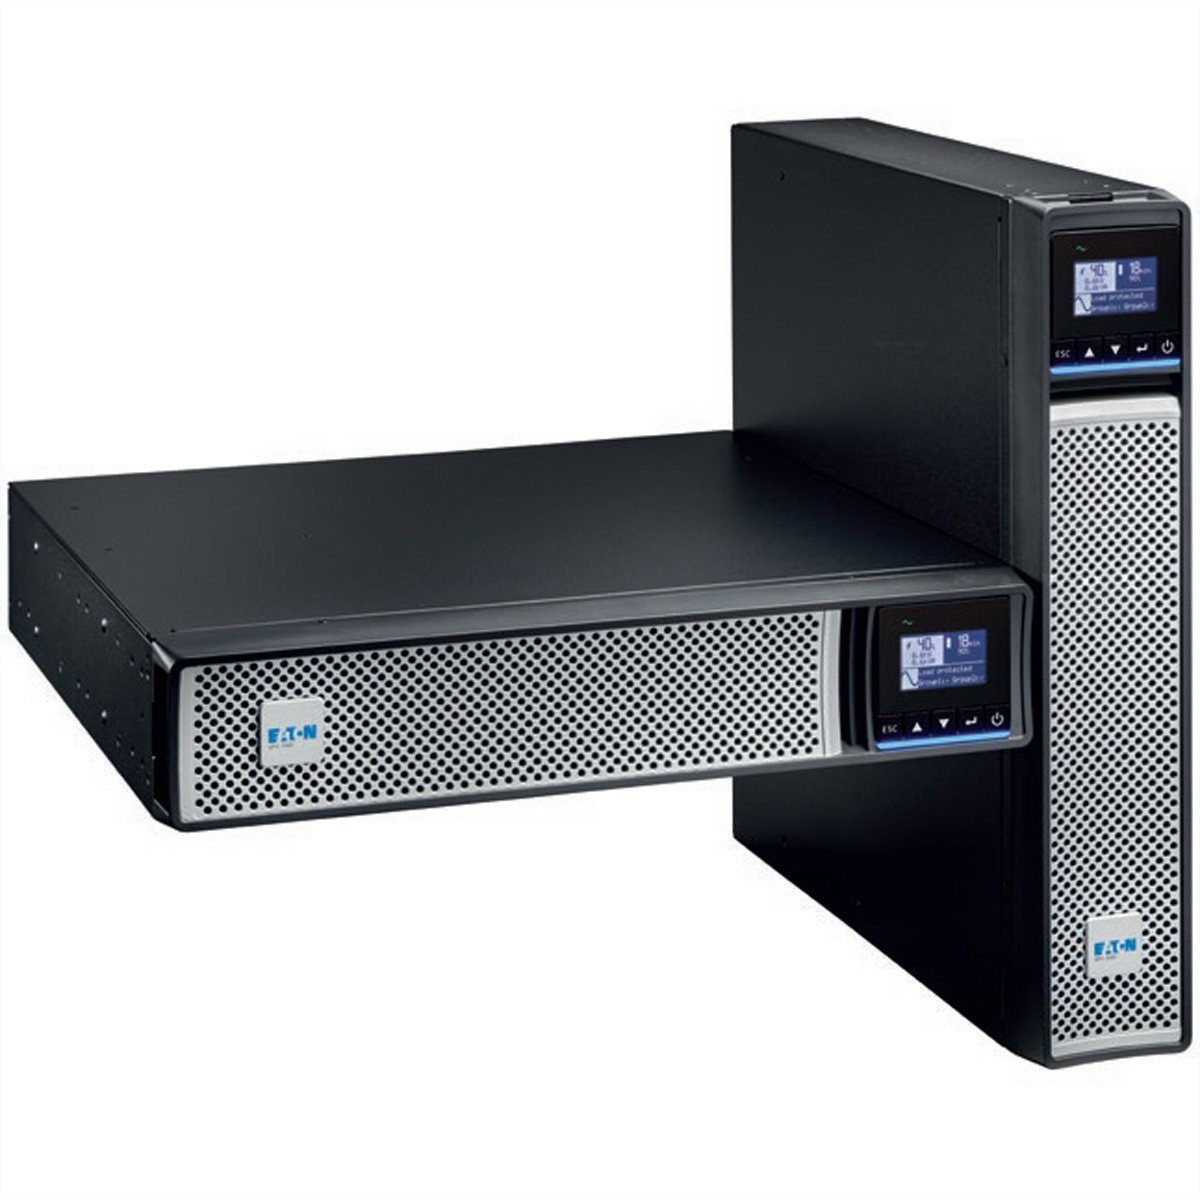 Eaton 5PX 1500i RT2U Netpack G2 1500 Watt 9min incl. Network management card - (Offline) UPS